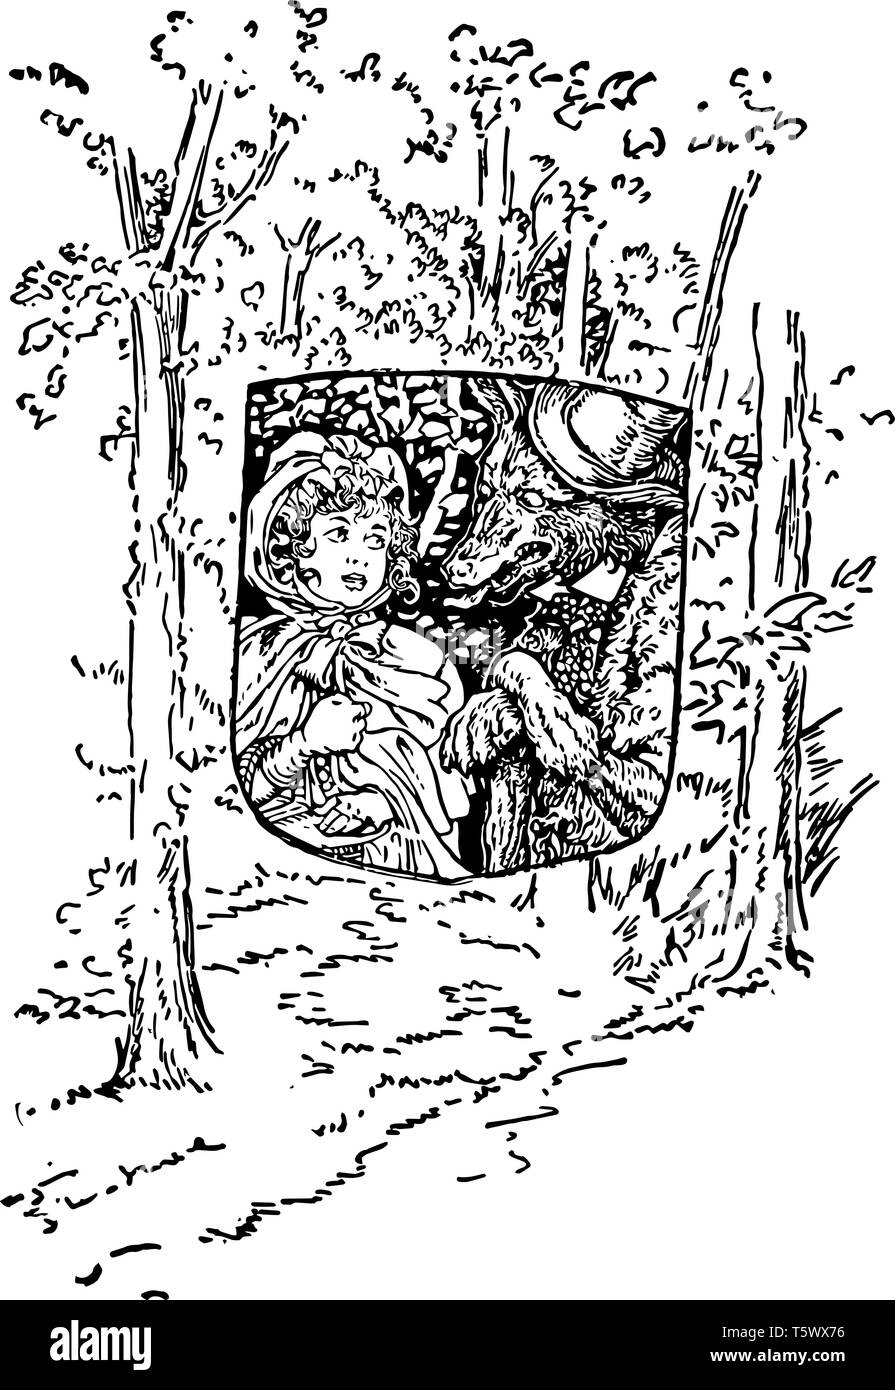 Rotkäppchen dieses Bild zeigt ein kleines Mädchen mit Wolf in Schild Form in der Mitte Bäume im Hintergrund vintage Strichzeichnung oder Gravur Stock Vektor